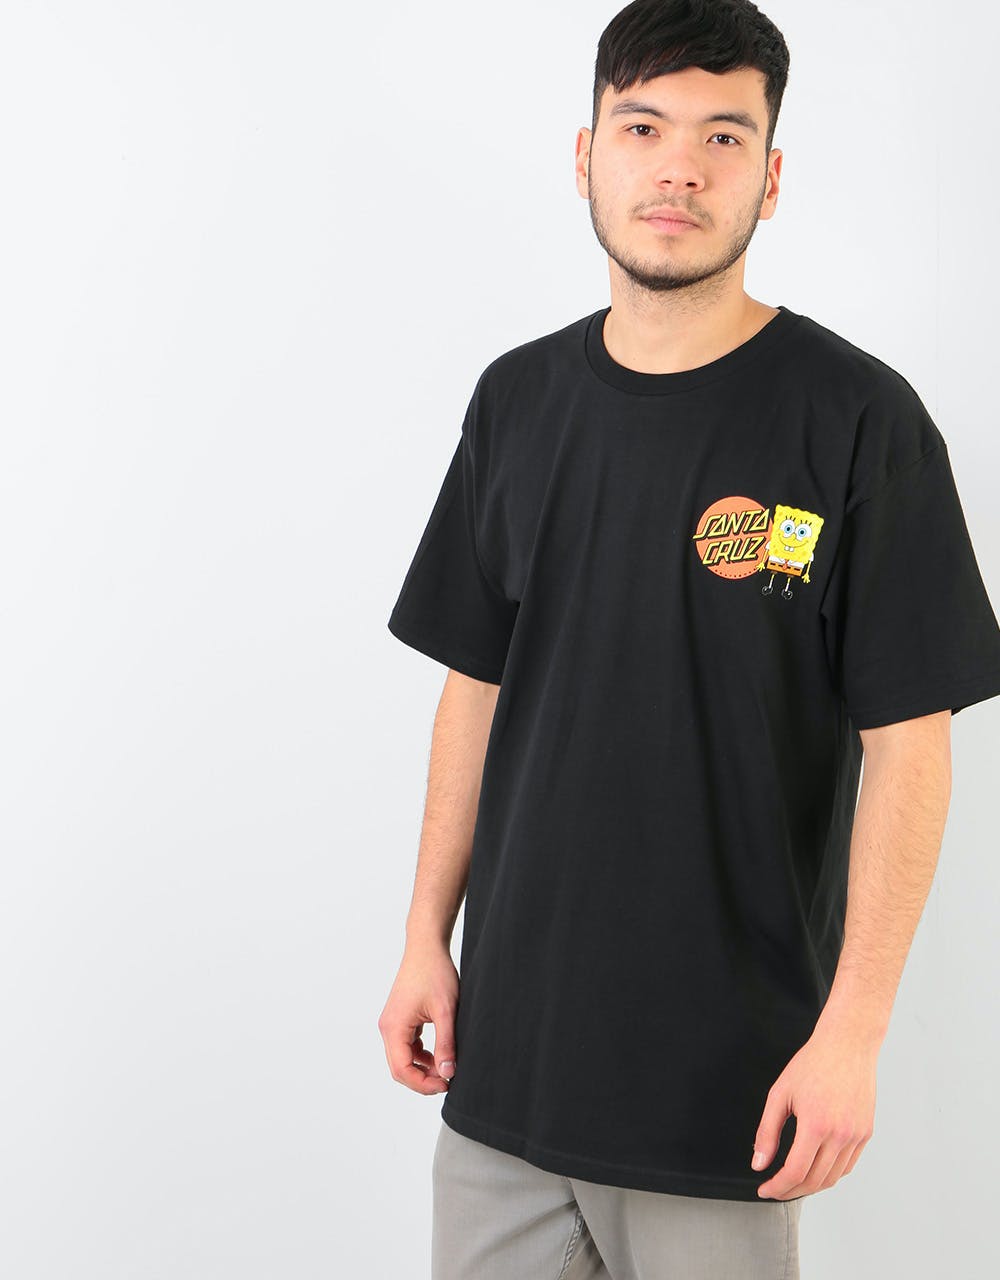 Santa Cruz x SpongeBob Group T-Shirt - Black